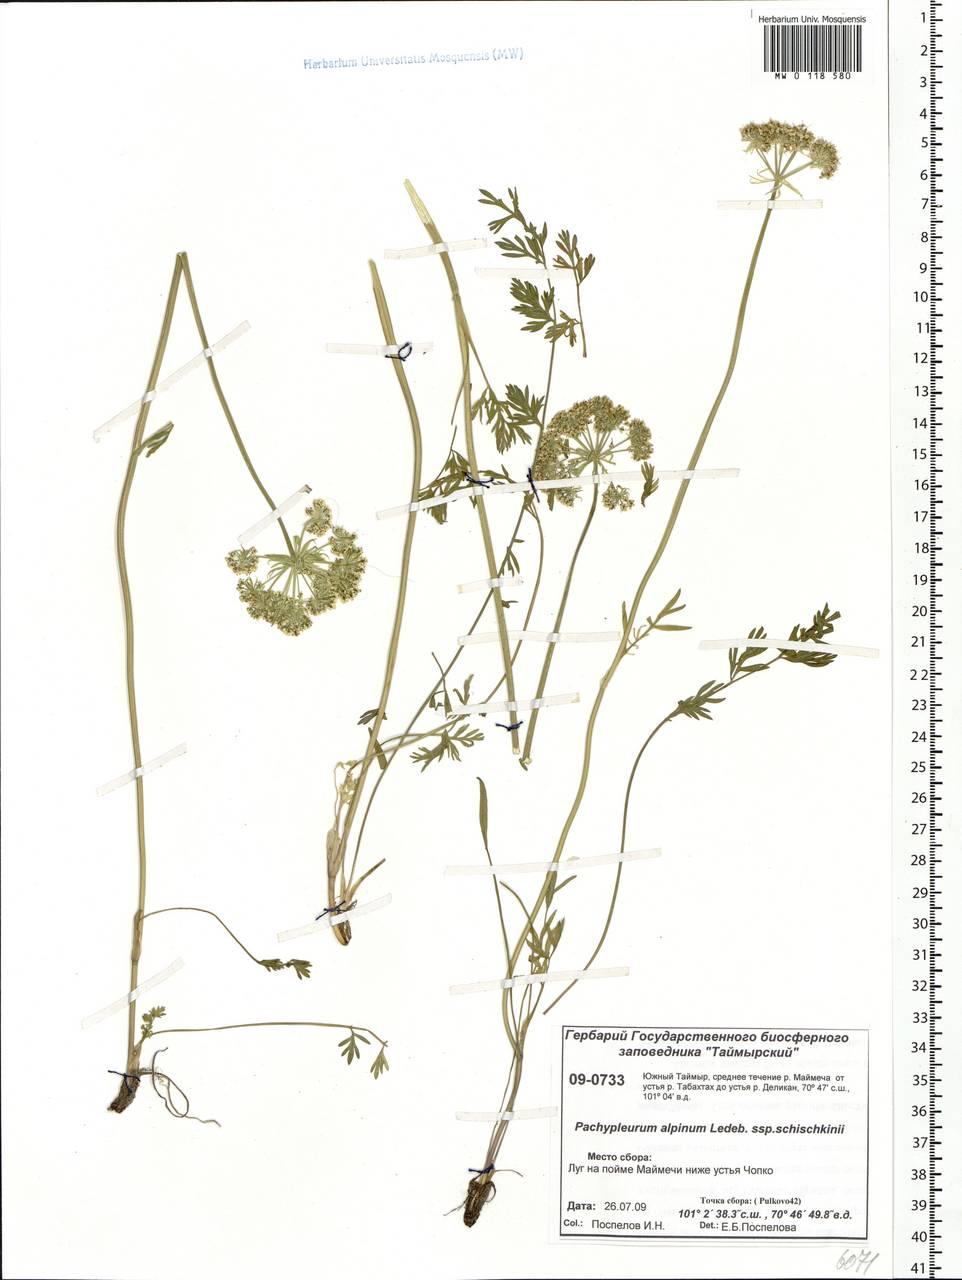 Pachypleurum mutellinoides (Crantz) Holub, Siberia, Central Siberia (S3) (Russia)